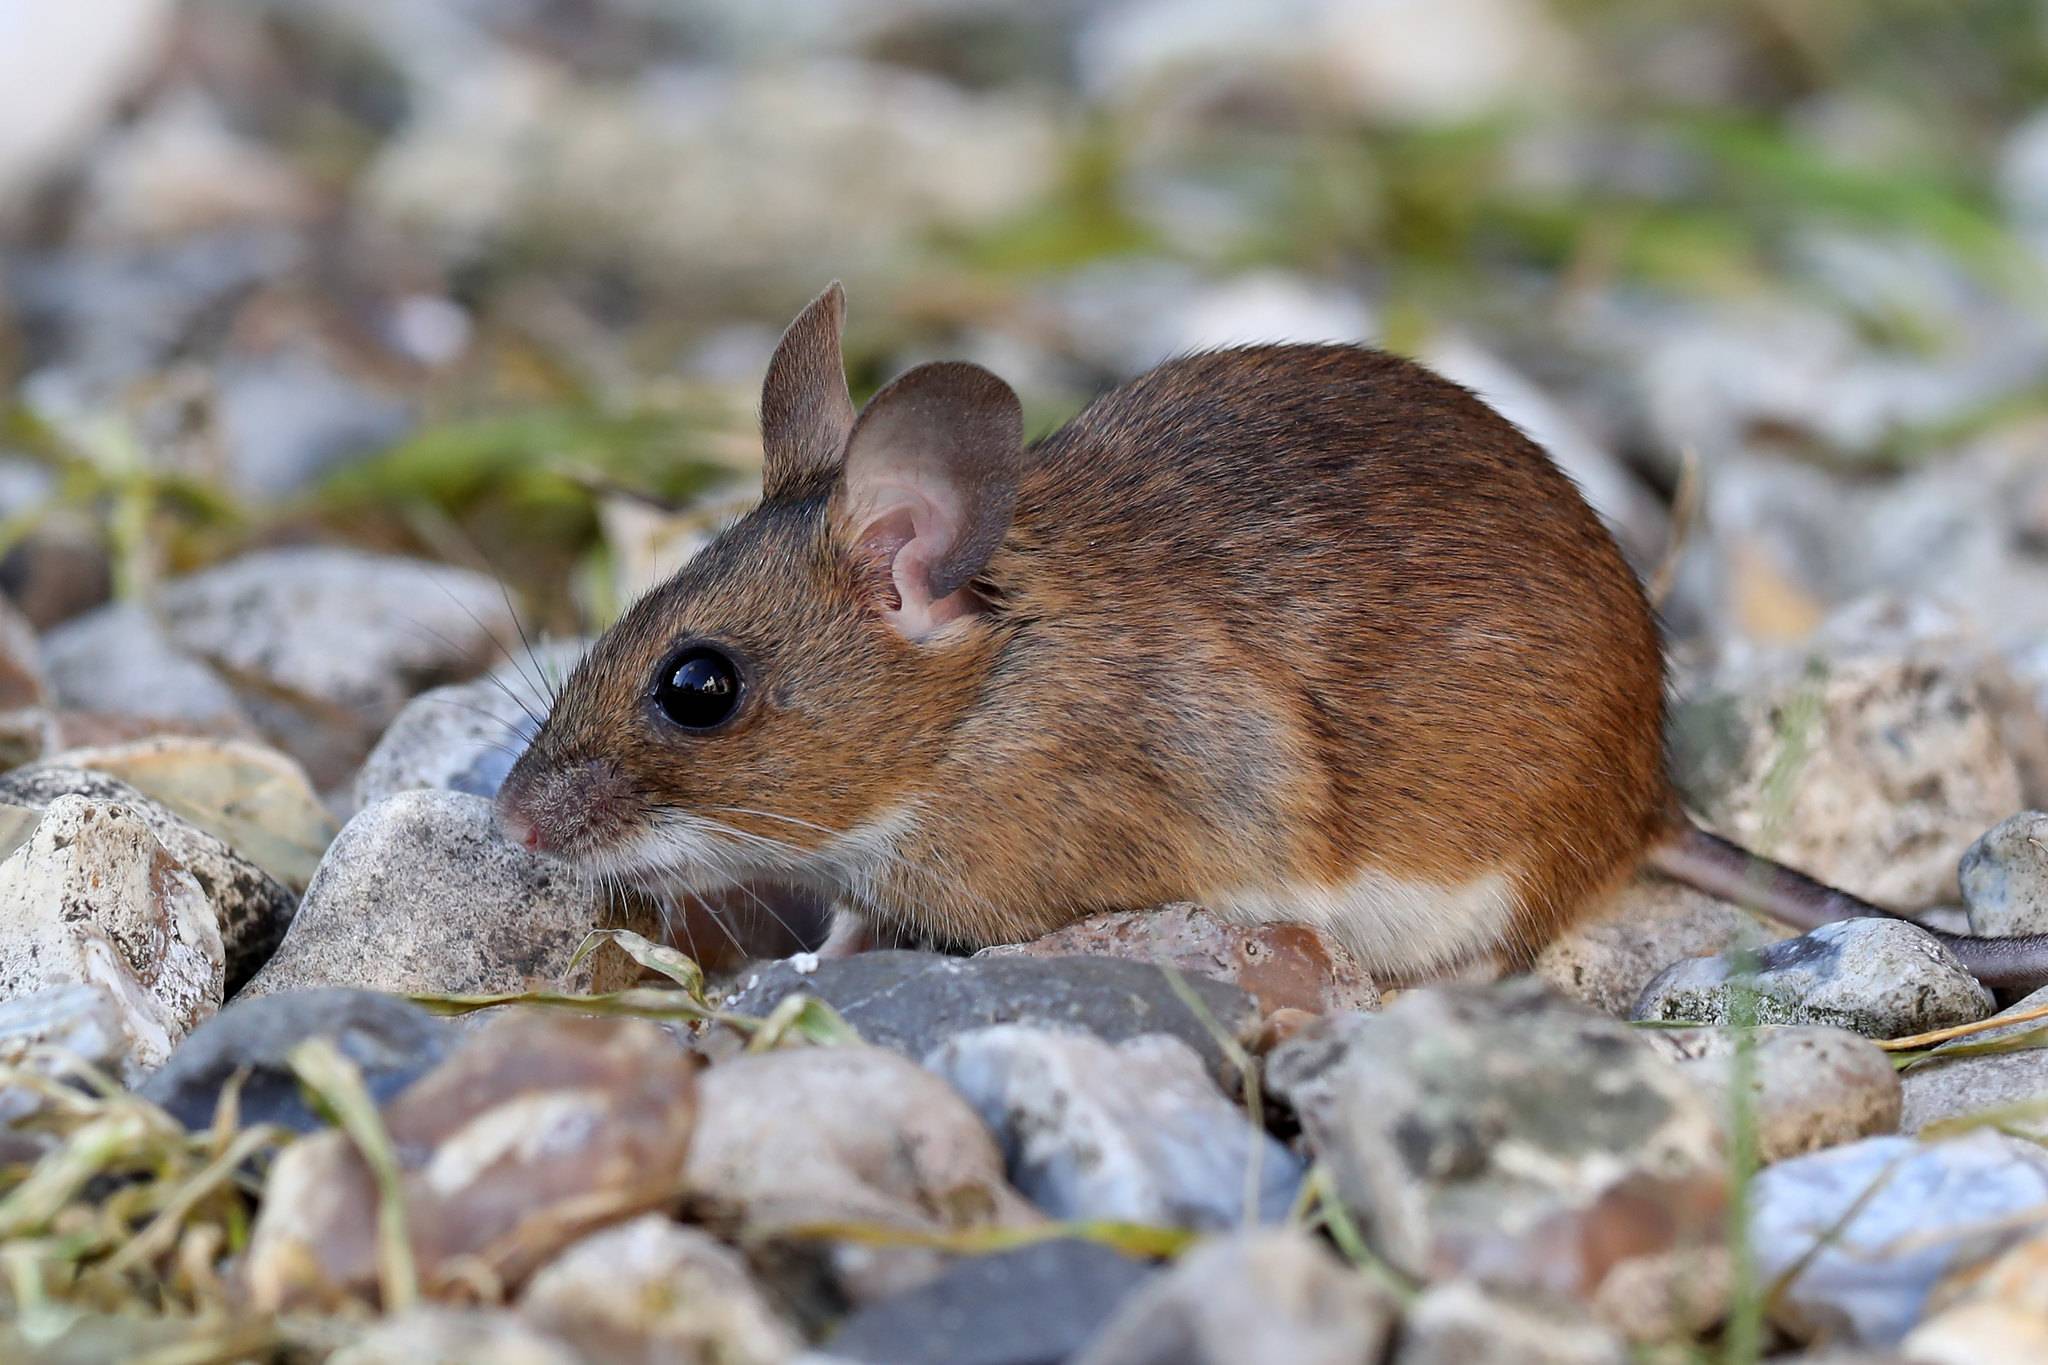 Виды и разновидности мышей с фото, названиями и описанием